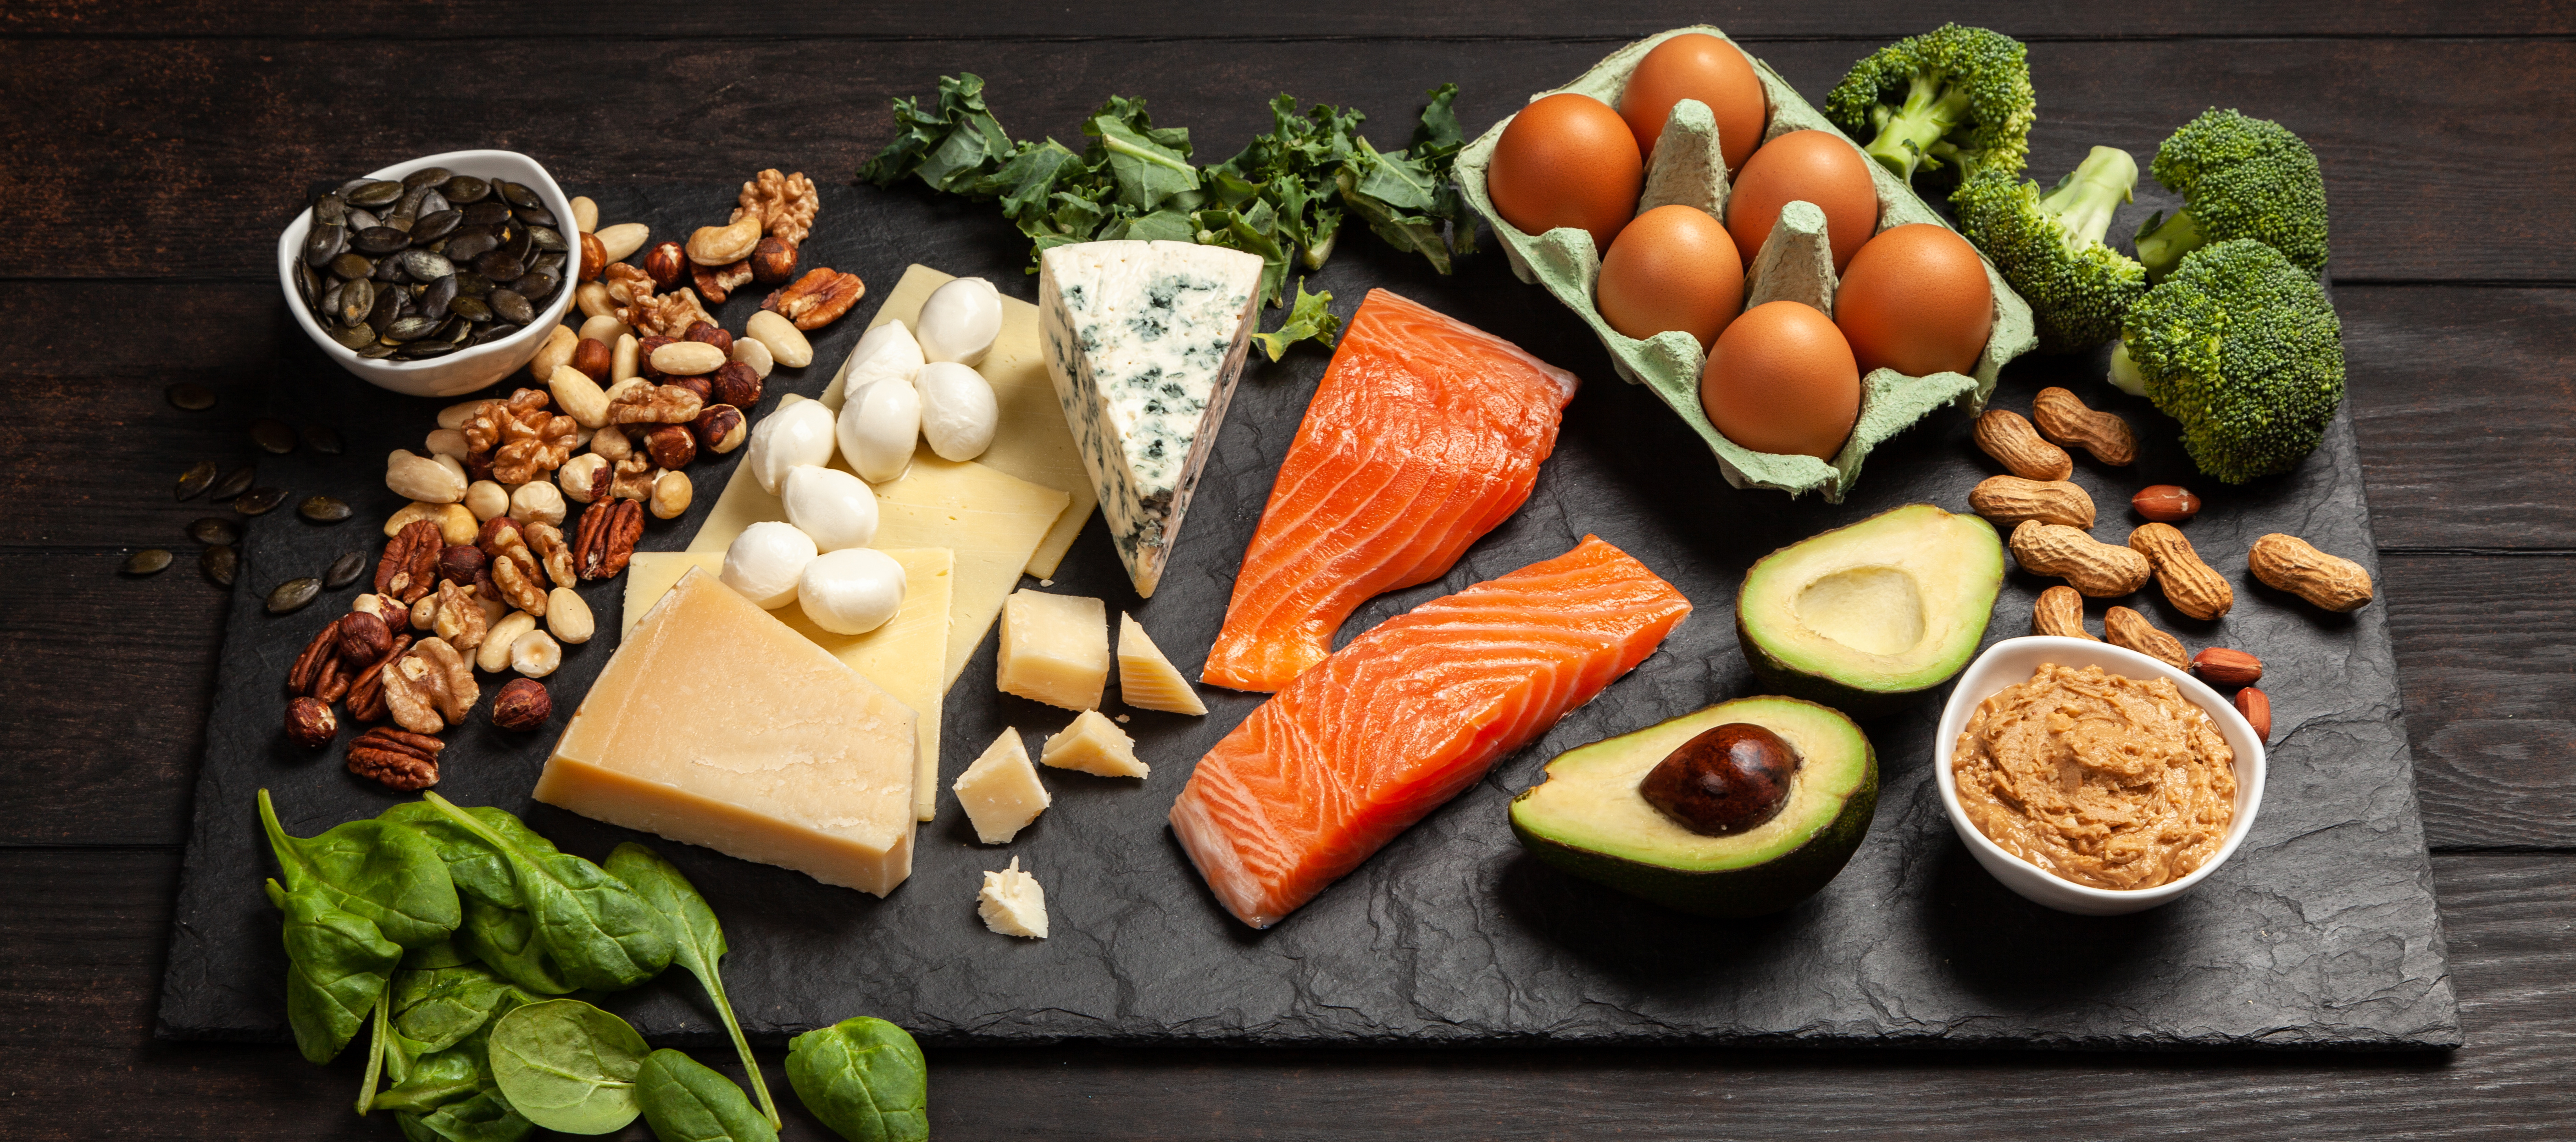 Concetto di dieta chetogenica - alimenti sani a basso contenuto di carboidrati proteine dieta iperproteica grassi